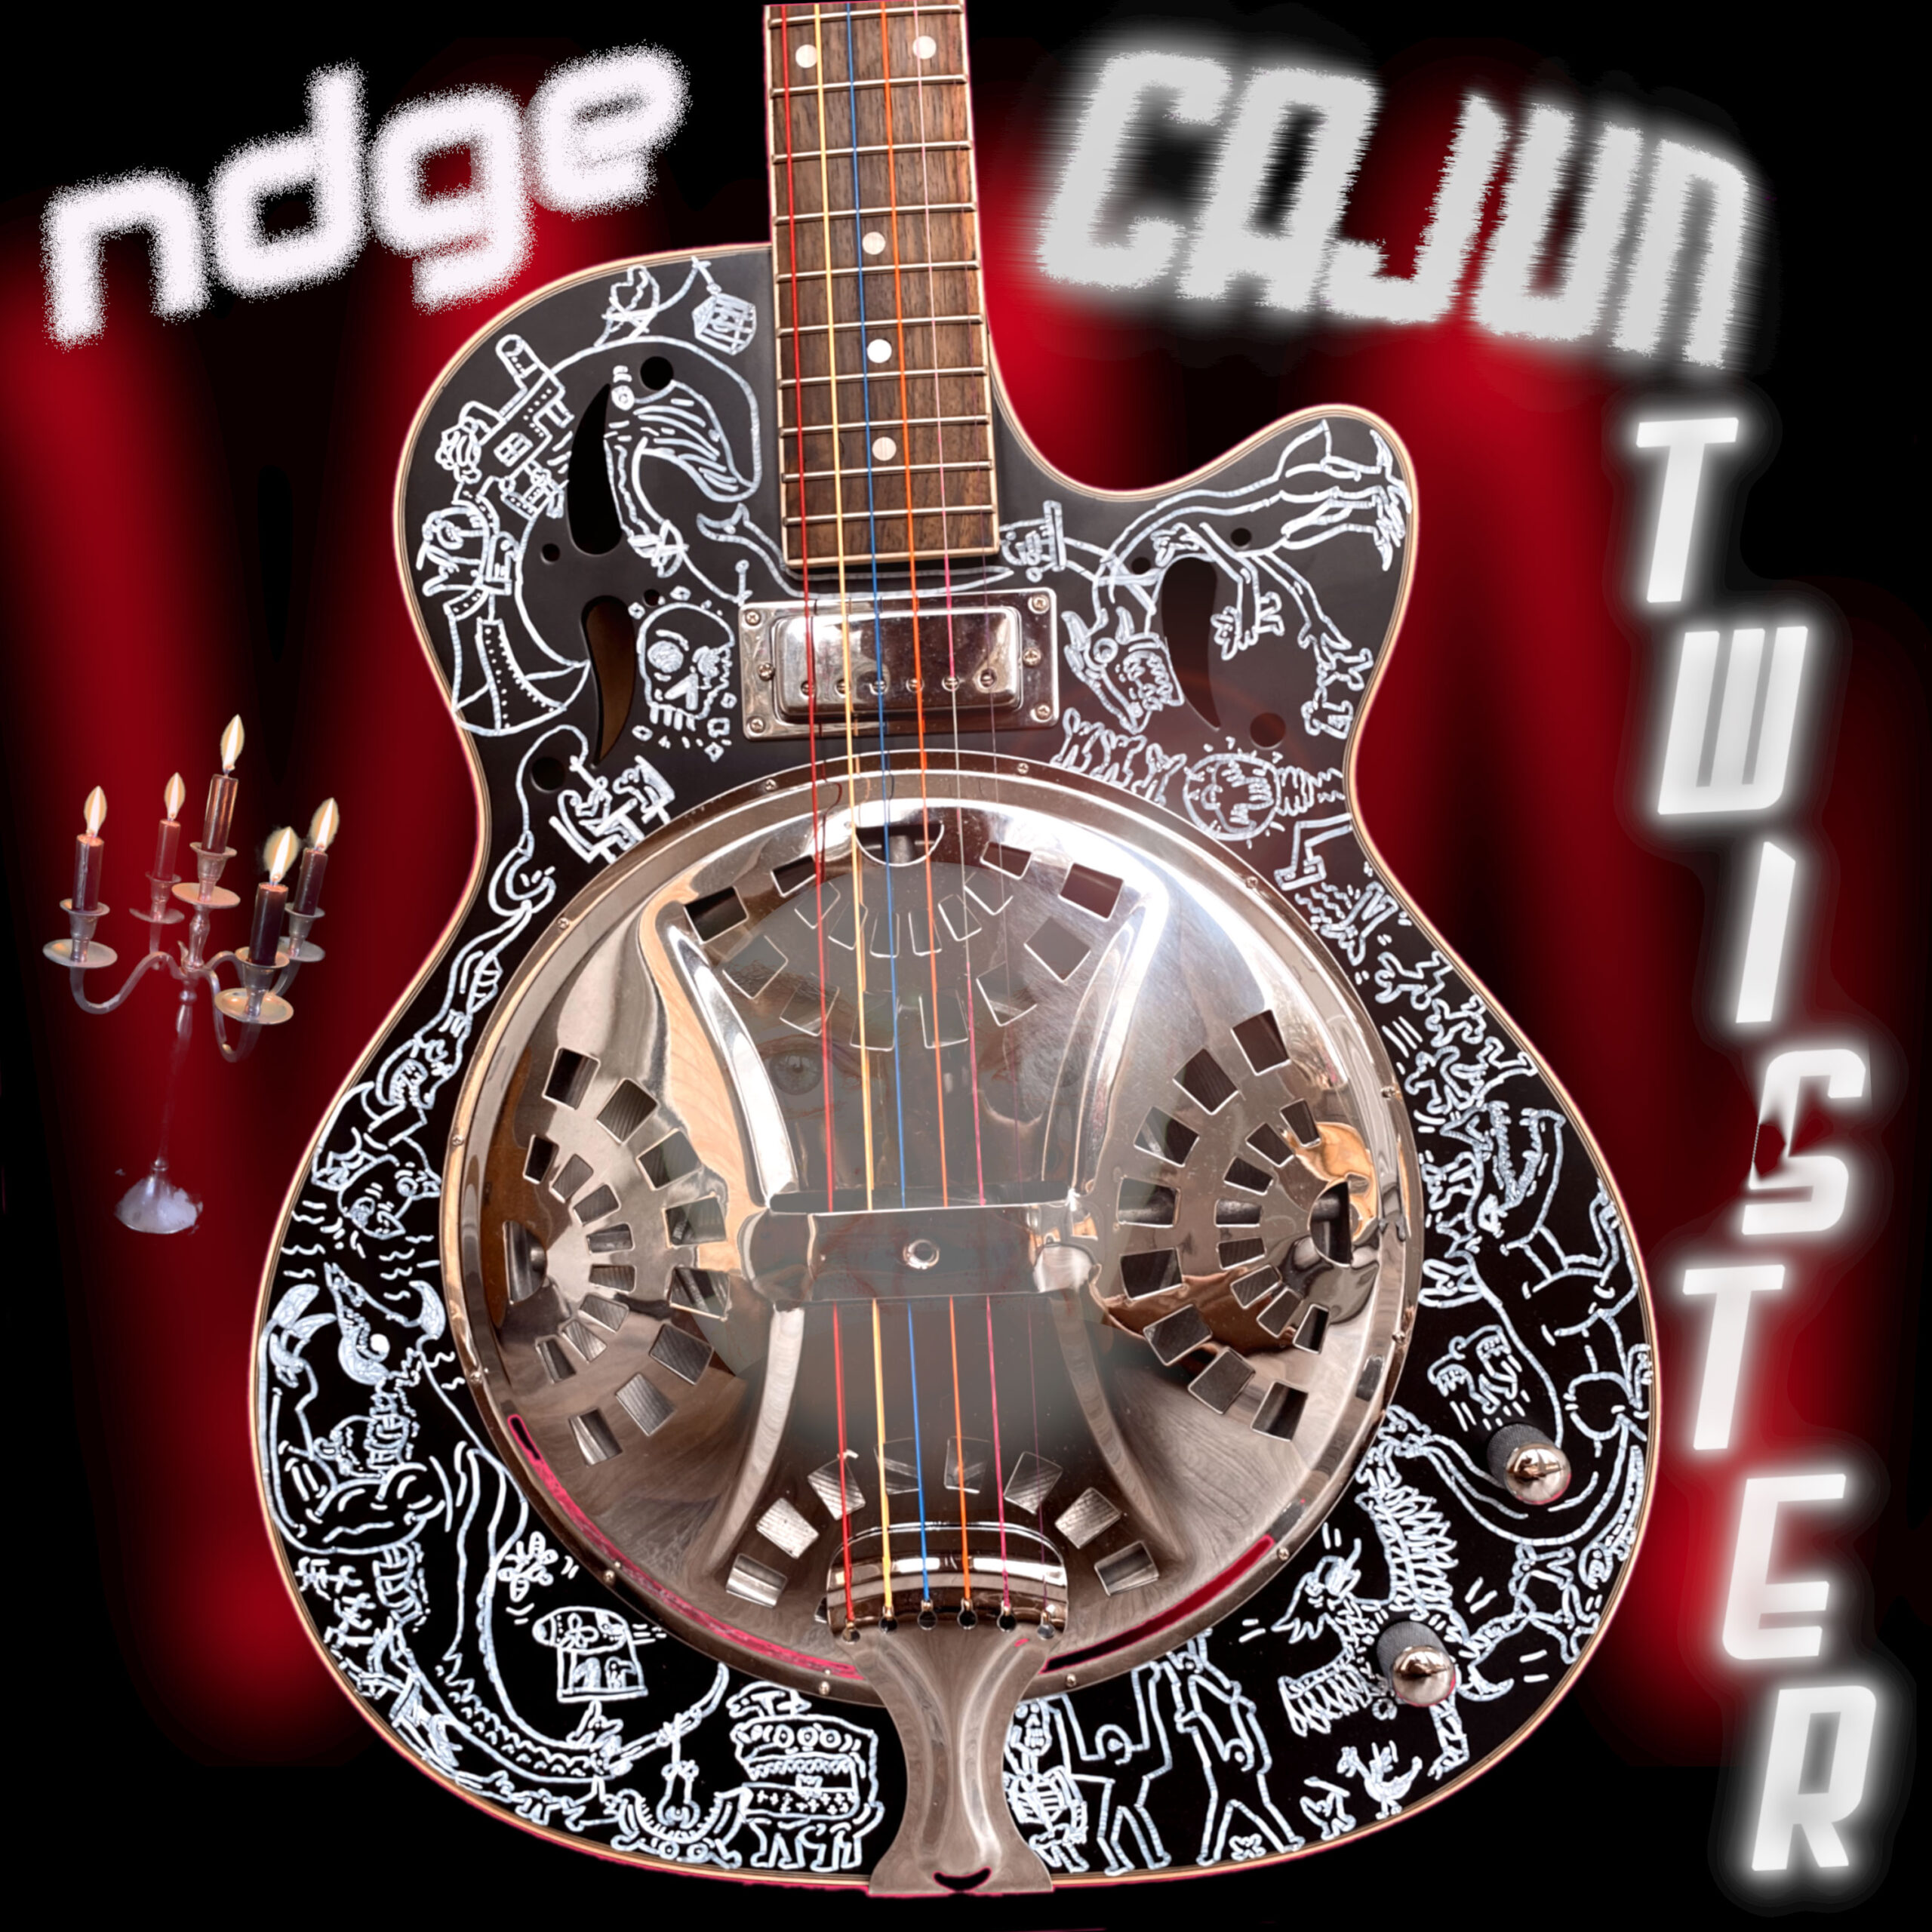  “Cajun Twister”: El nuevo sencillo oscuro y fascinante de ndge